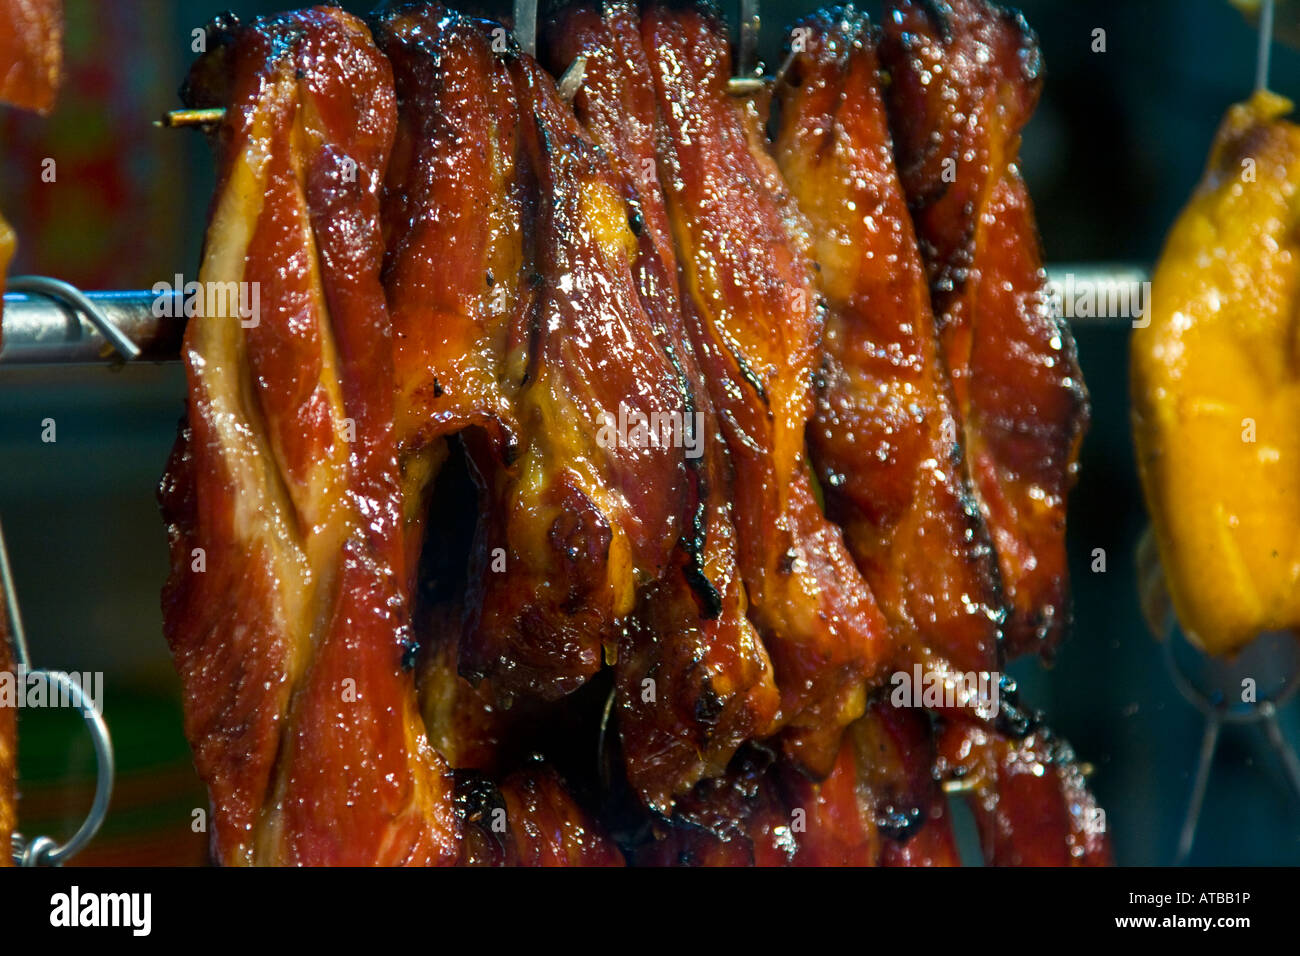 Barbecued Pork at a Hong Kong Restaurant Stock Photo